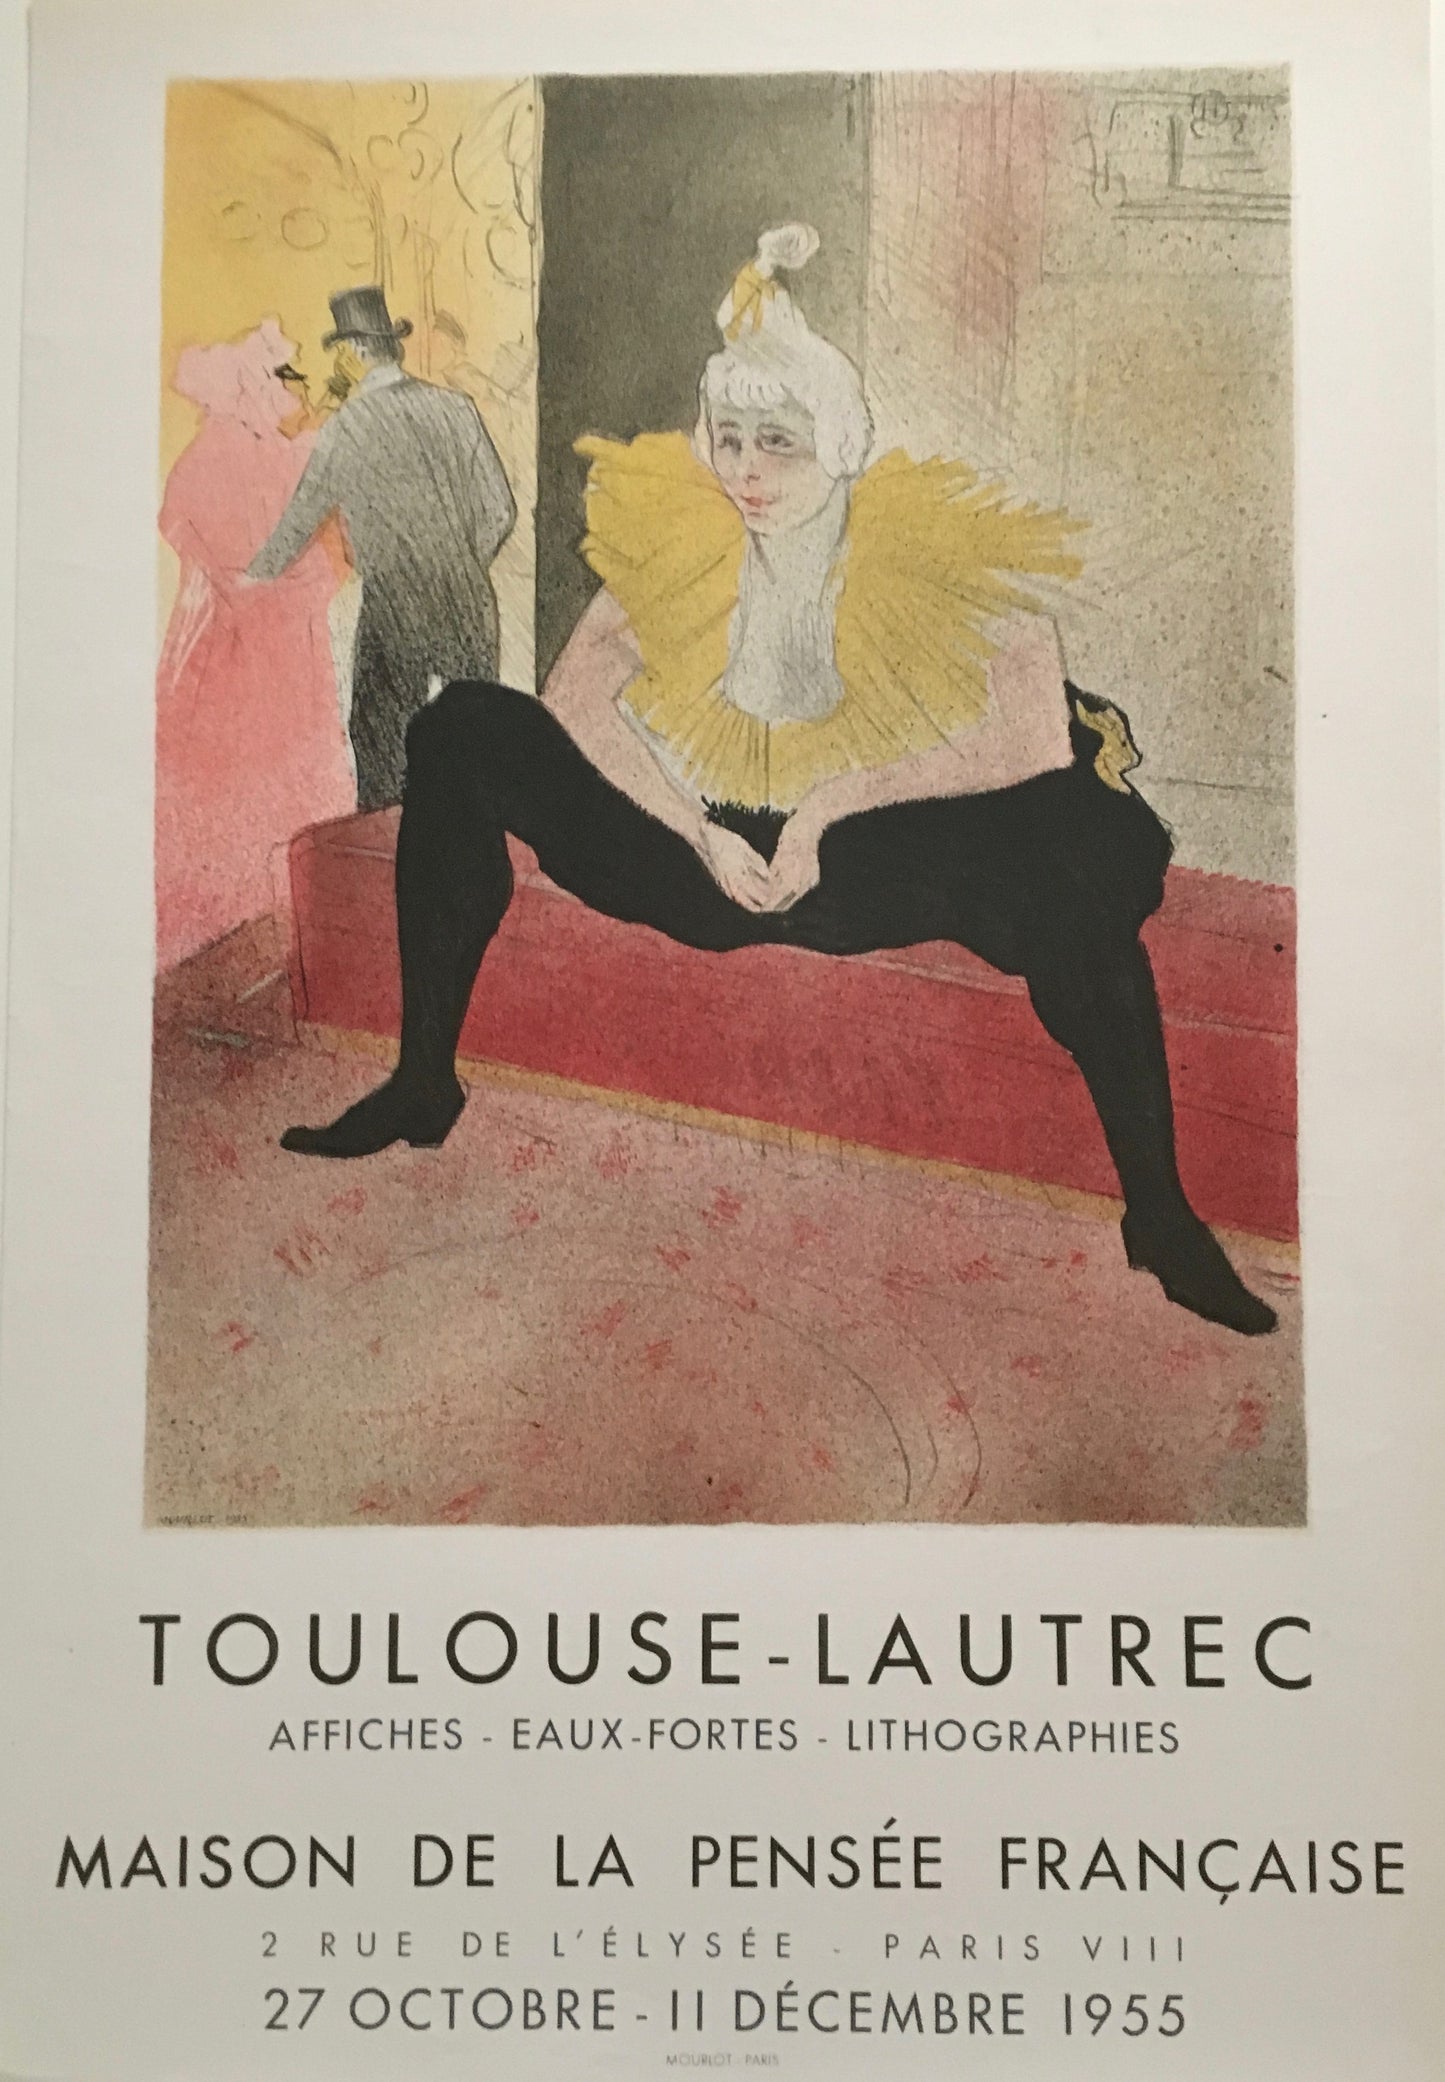 Toulouse-Lautrec "The Clownese Cha-u-kao" Maison de la Pensee 1955 (17.75w x 26.75t)